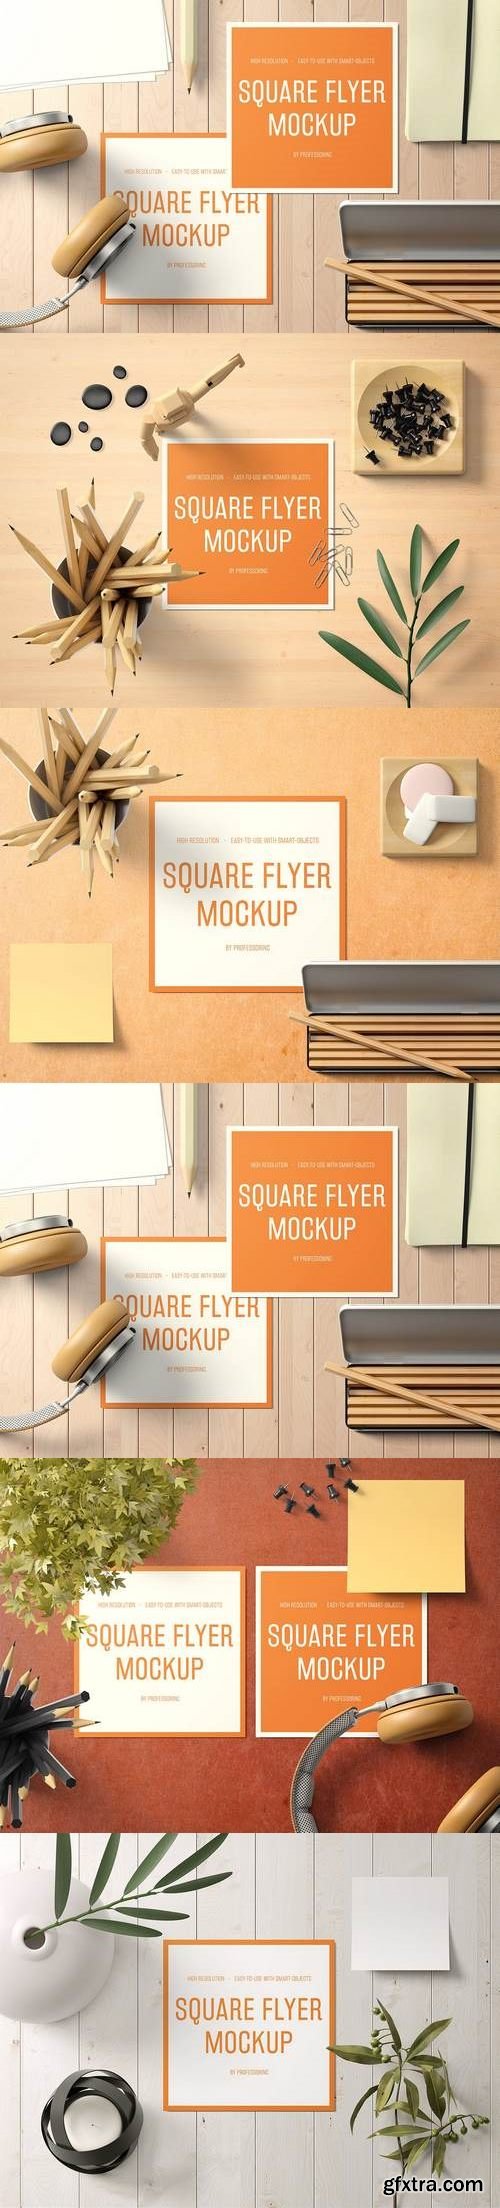 Square Flyer Mockup - Set 2